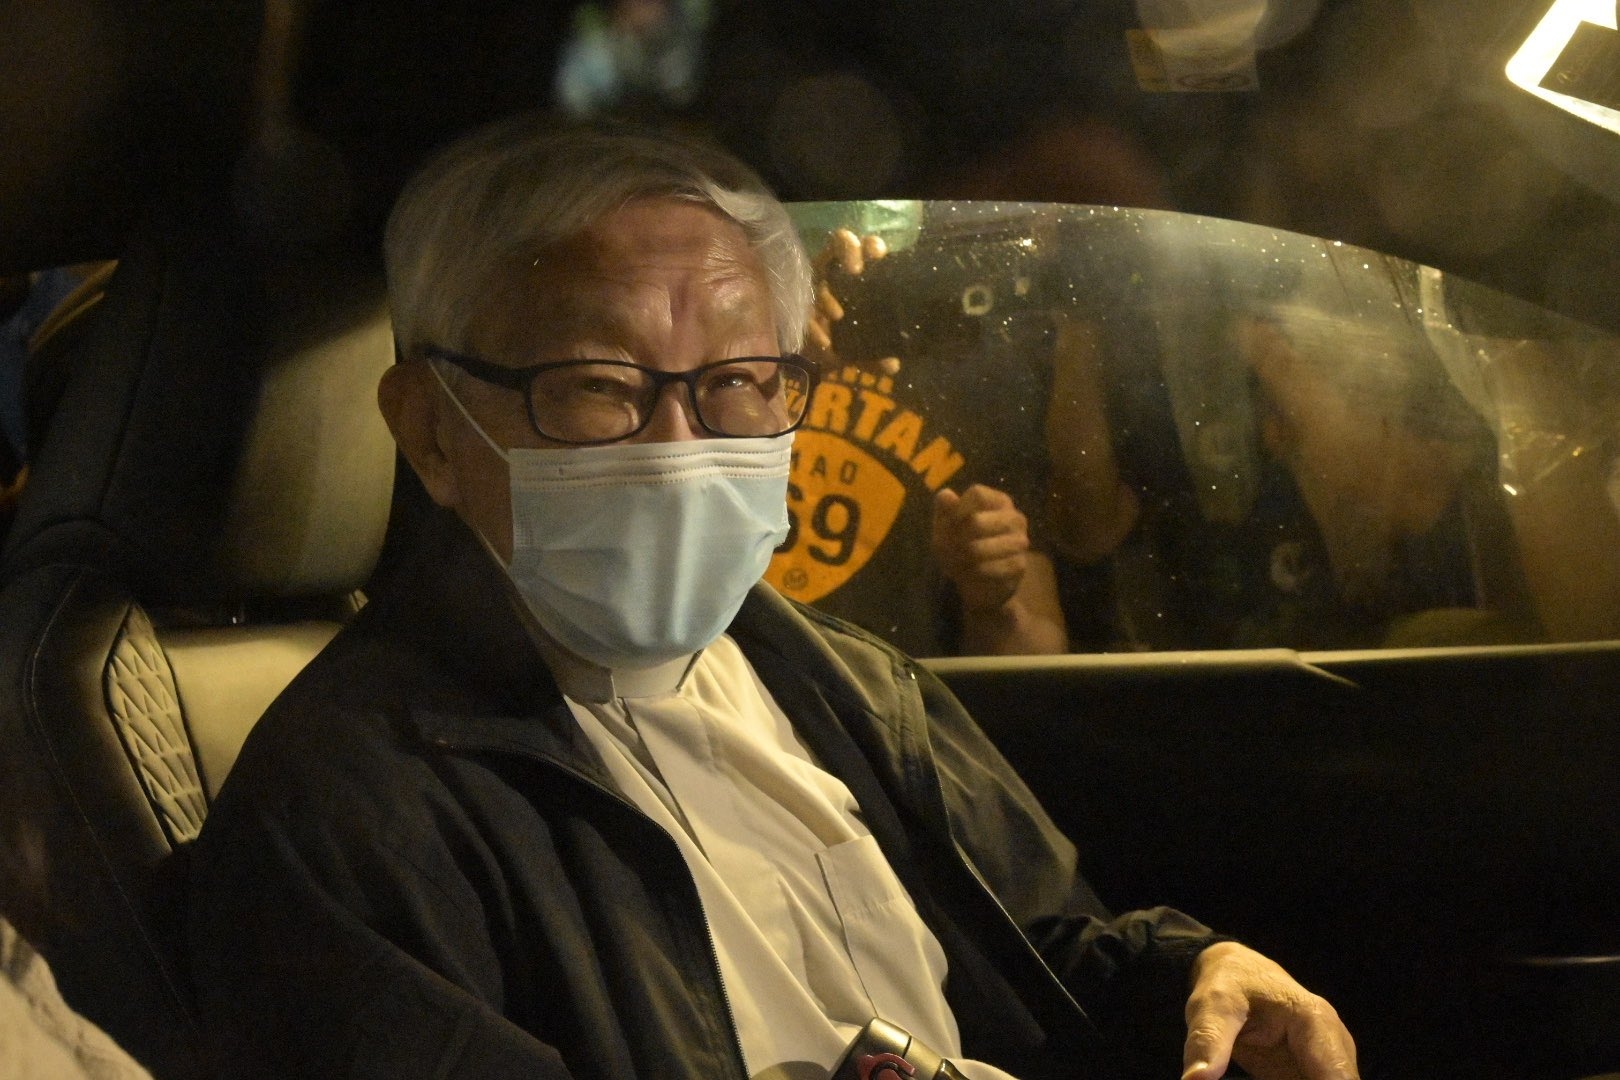 Cardeal de 90 anos é preso em Hong Kong por apoiar a democracia